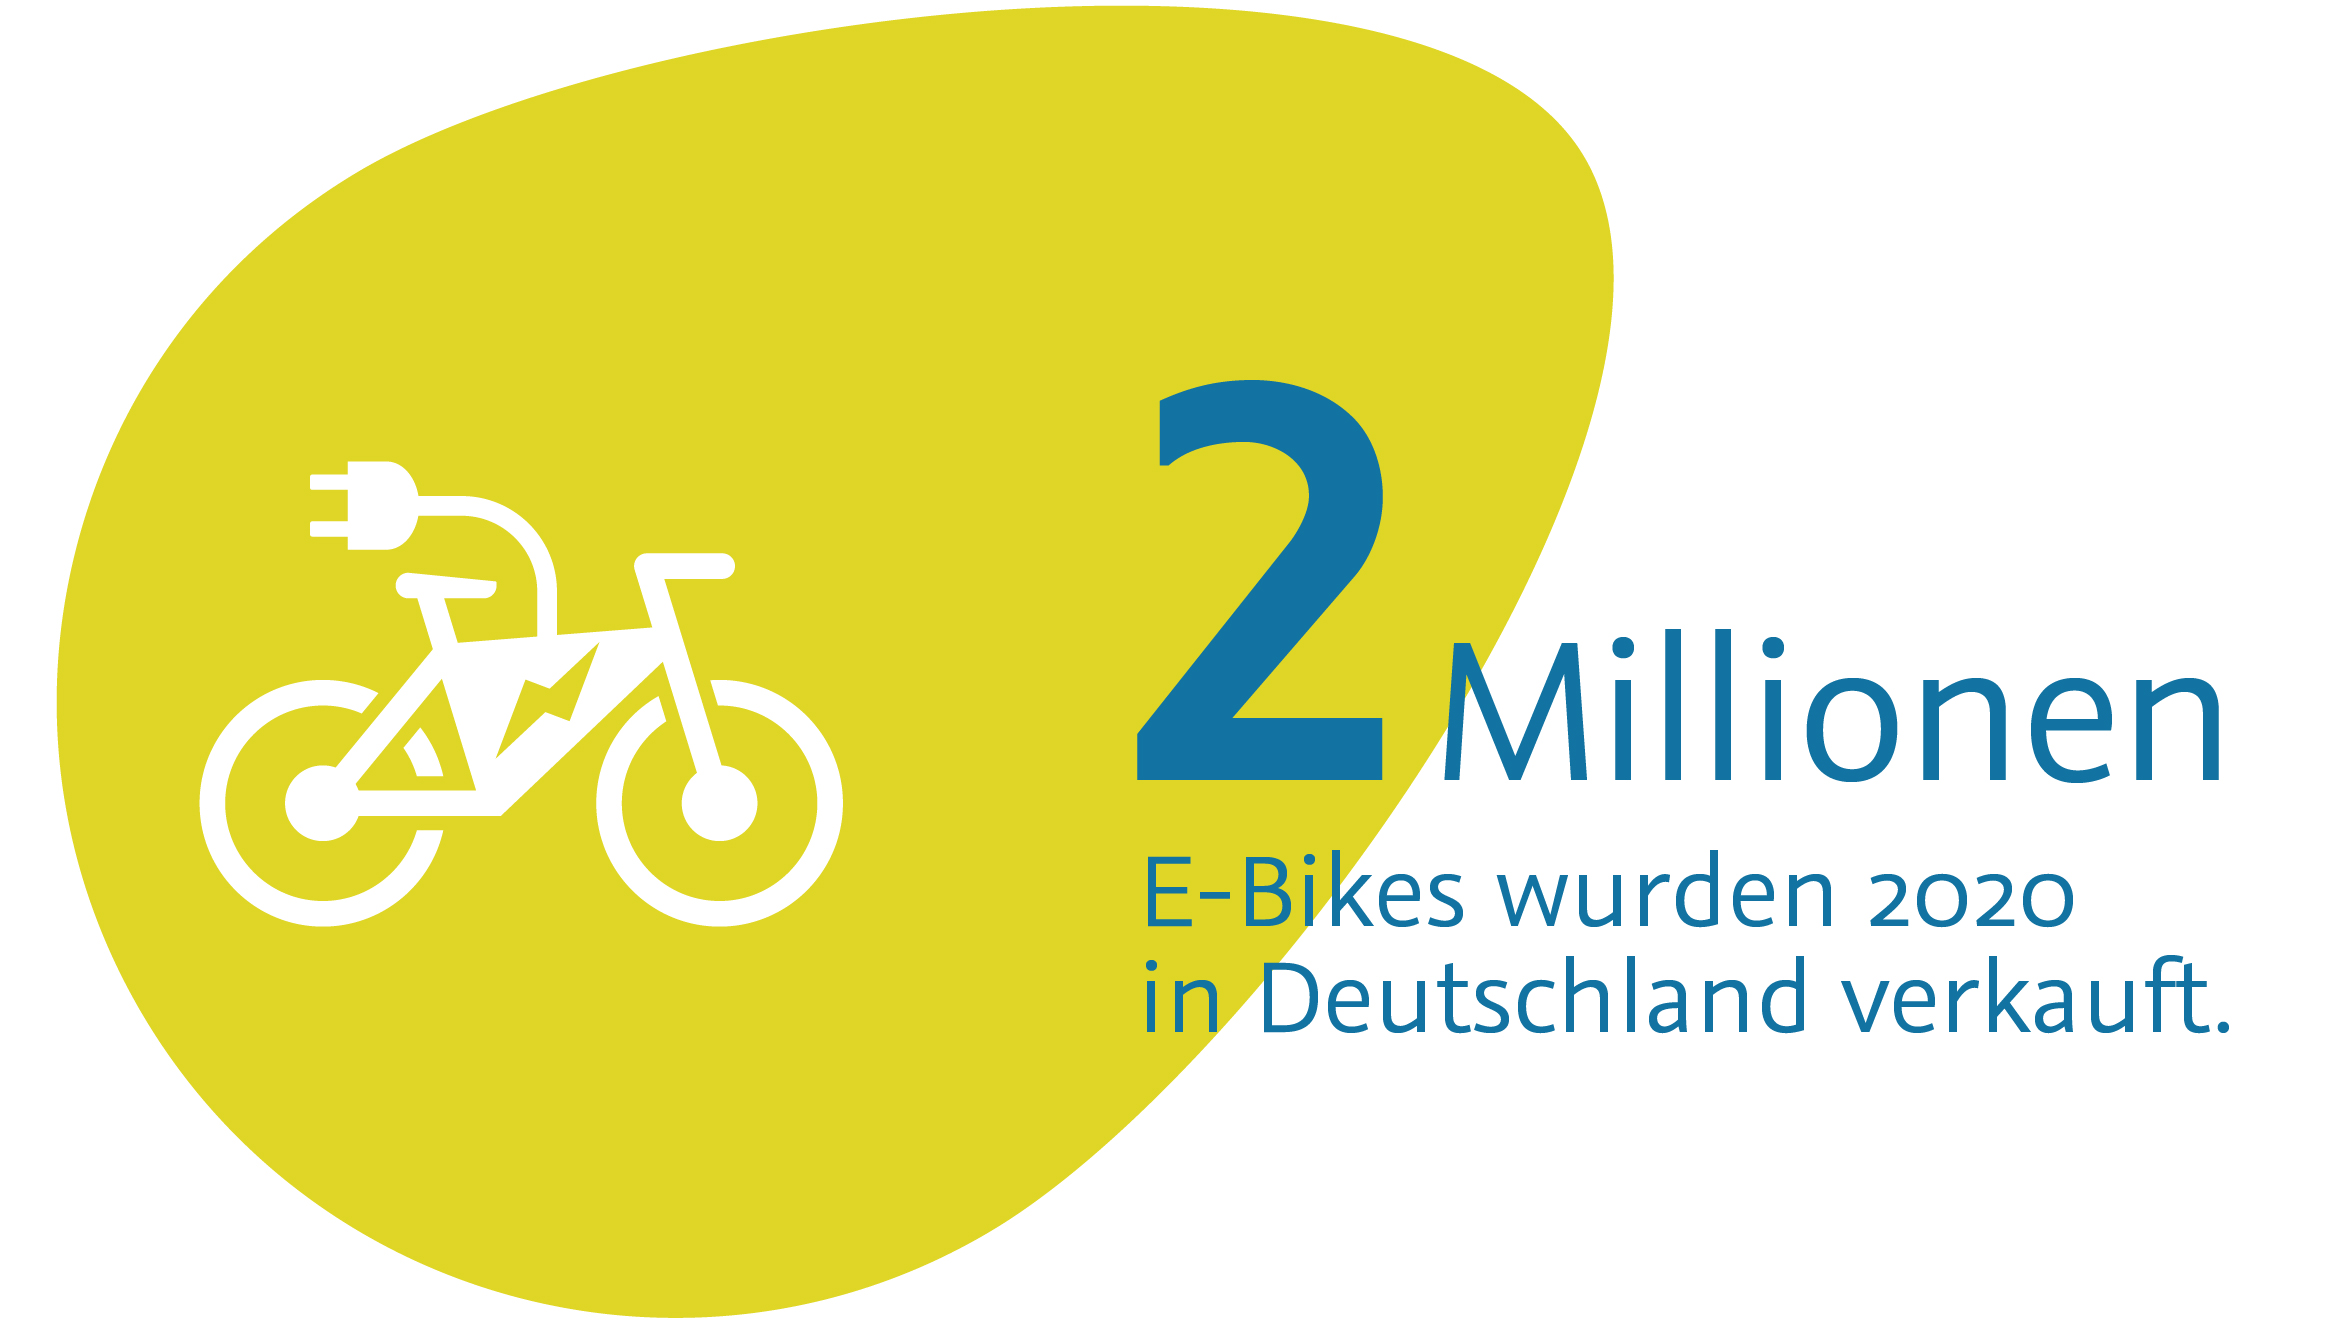 2 Mio. E-Bikes wurden 2020 in Deutschland verkauft